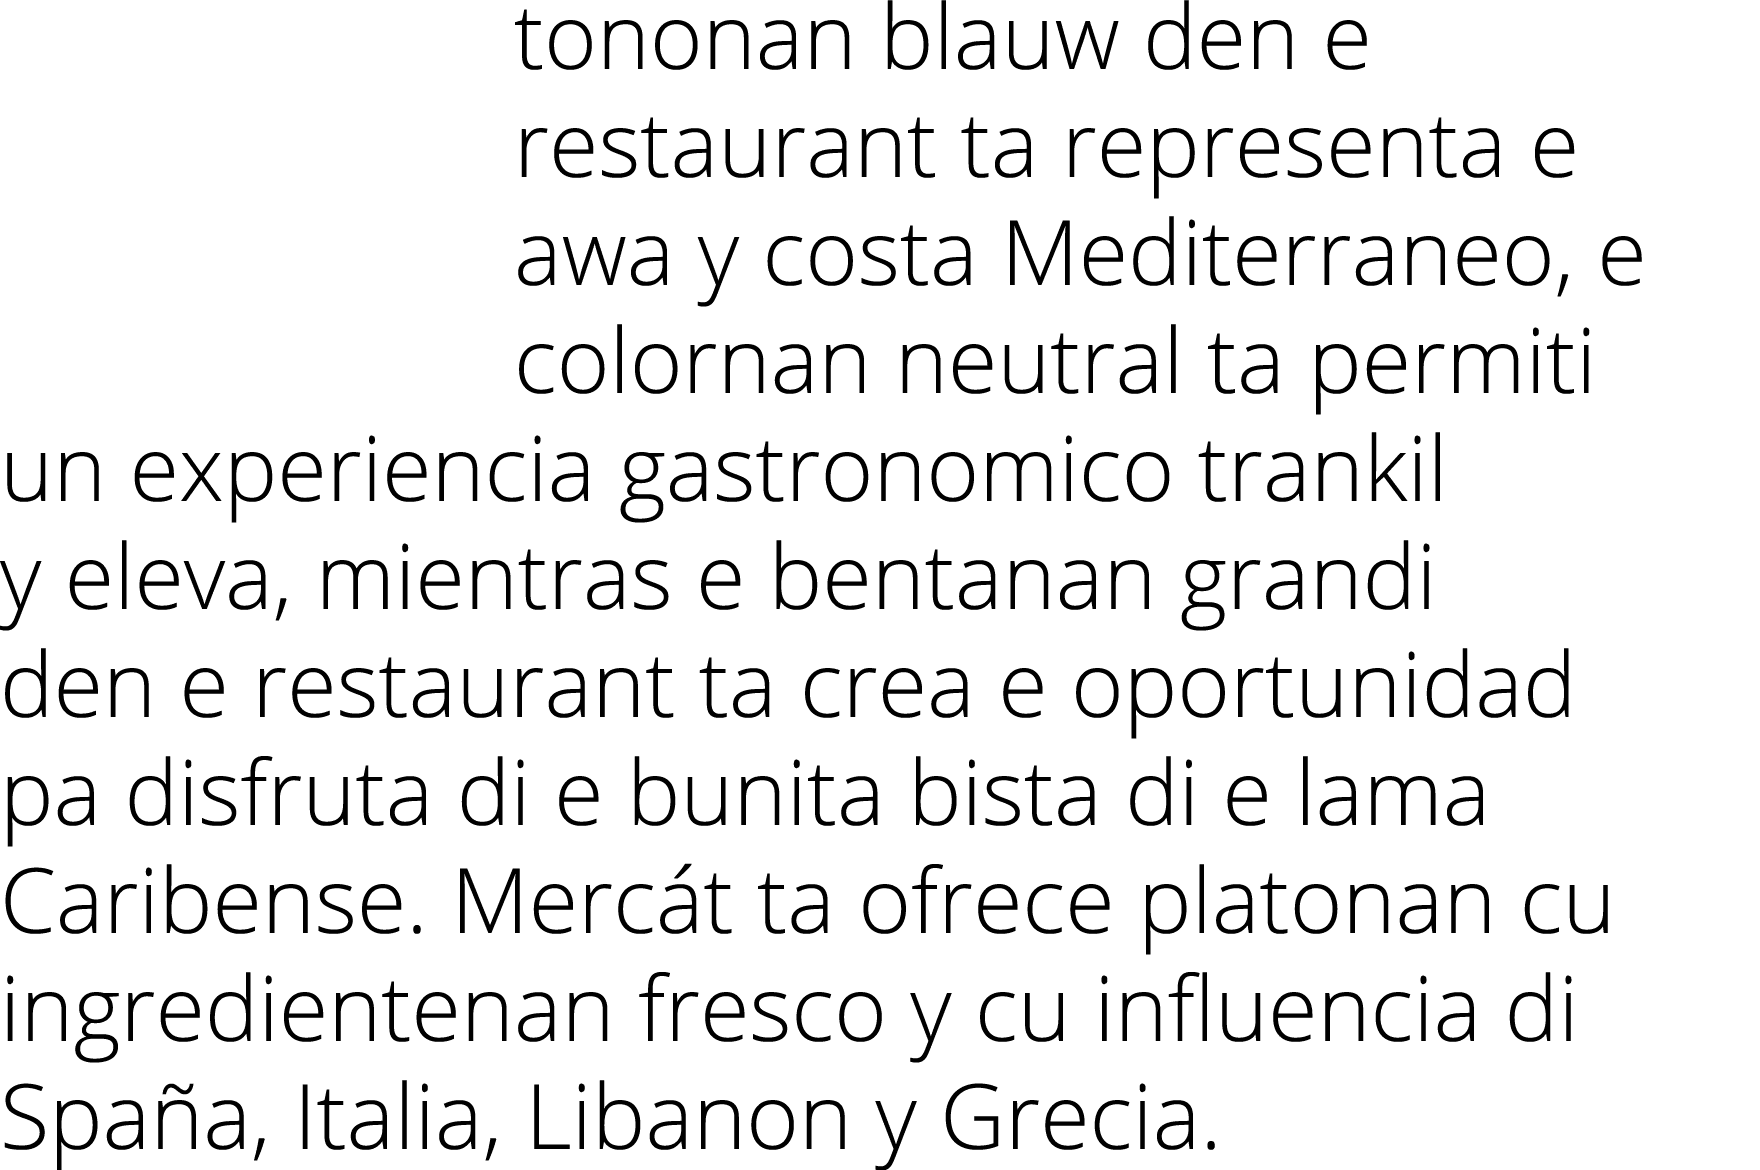 tononan blauw den e restaurant ta representa e awa y costa Mediterraneo, e colornan neutral ta permiti un experiencia...